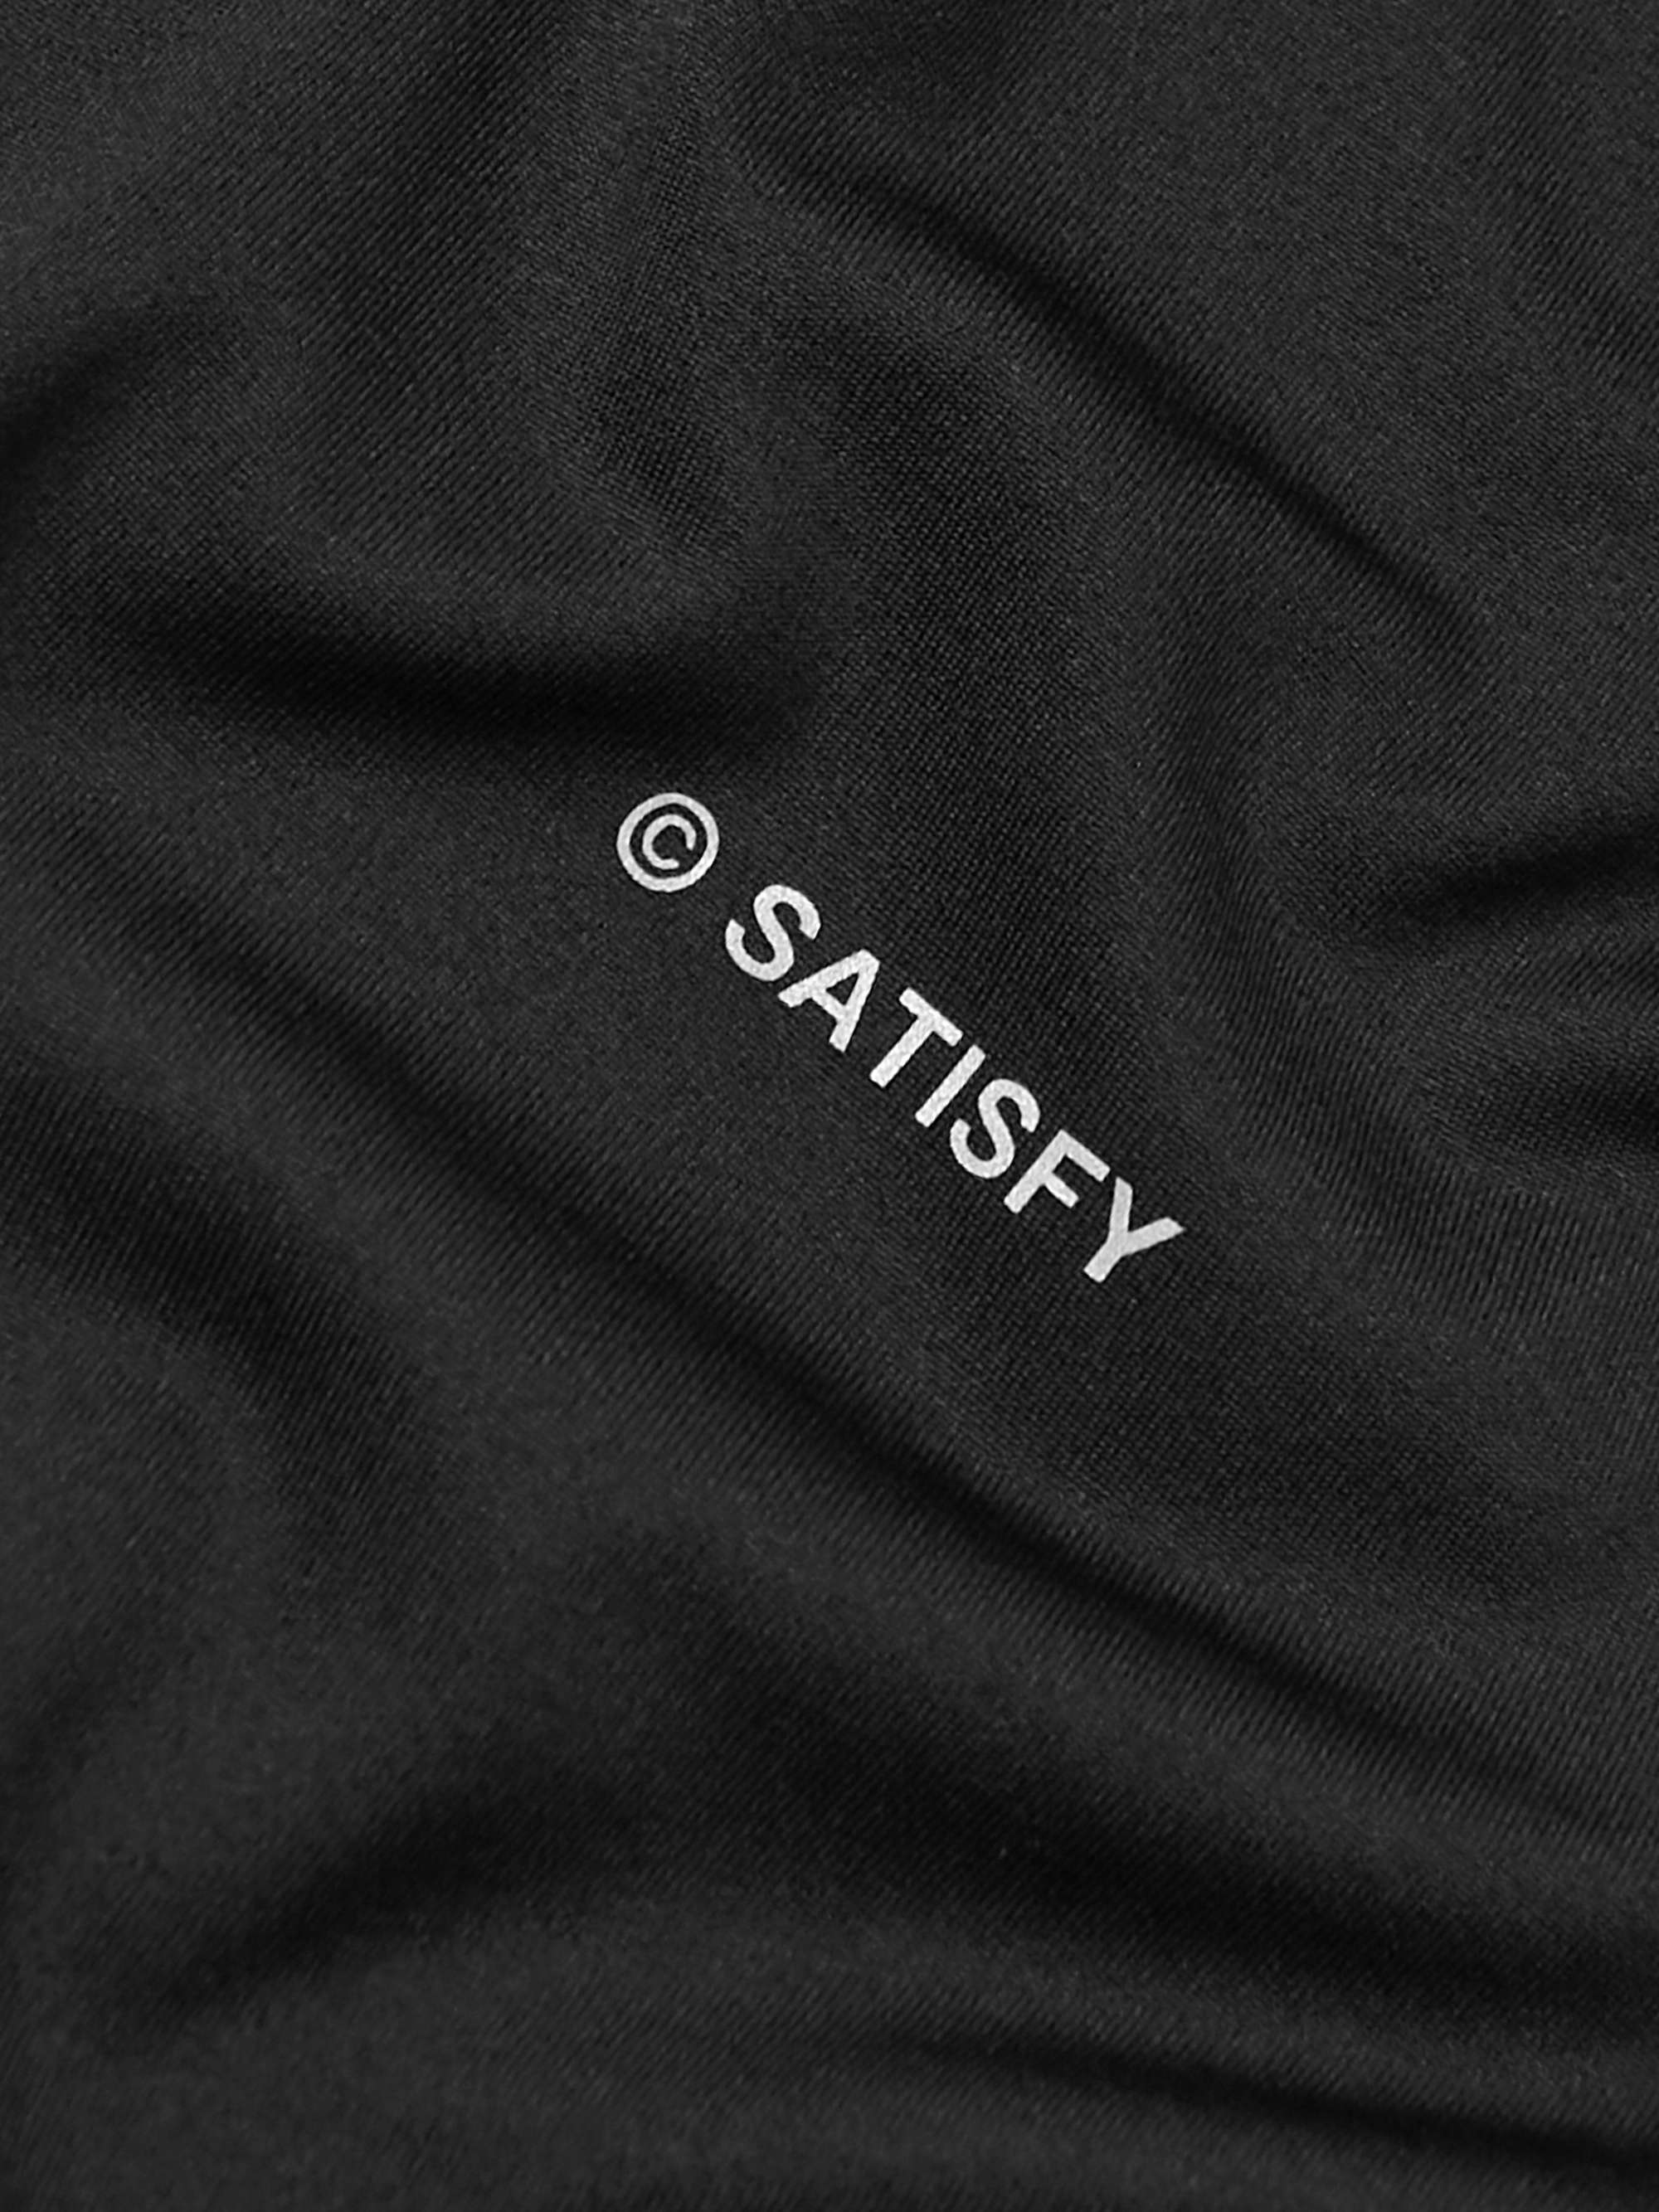 SATISFY Printed AuraLite™ Jersey T-Shirt